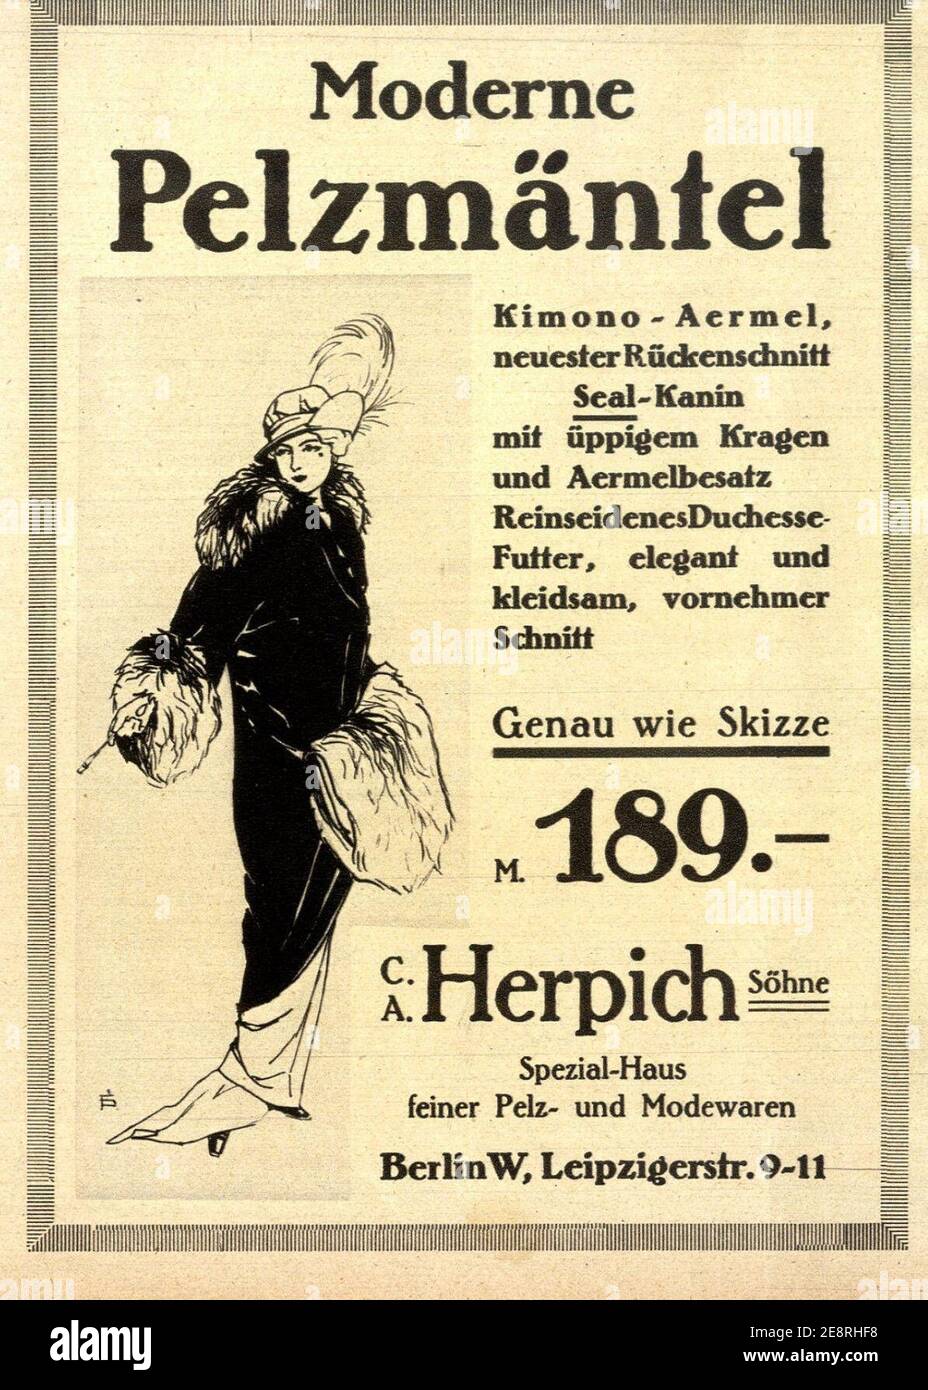 Moderne Pelzmäntel von C. A. Herpich Söhne, 1913. Stock Photo